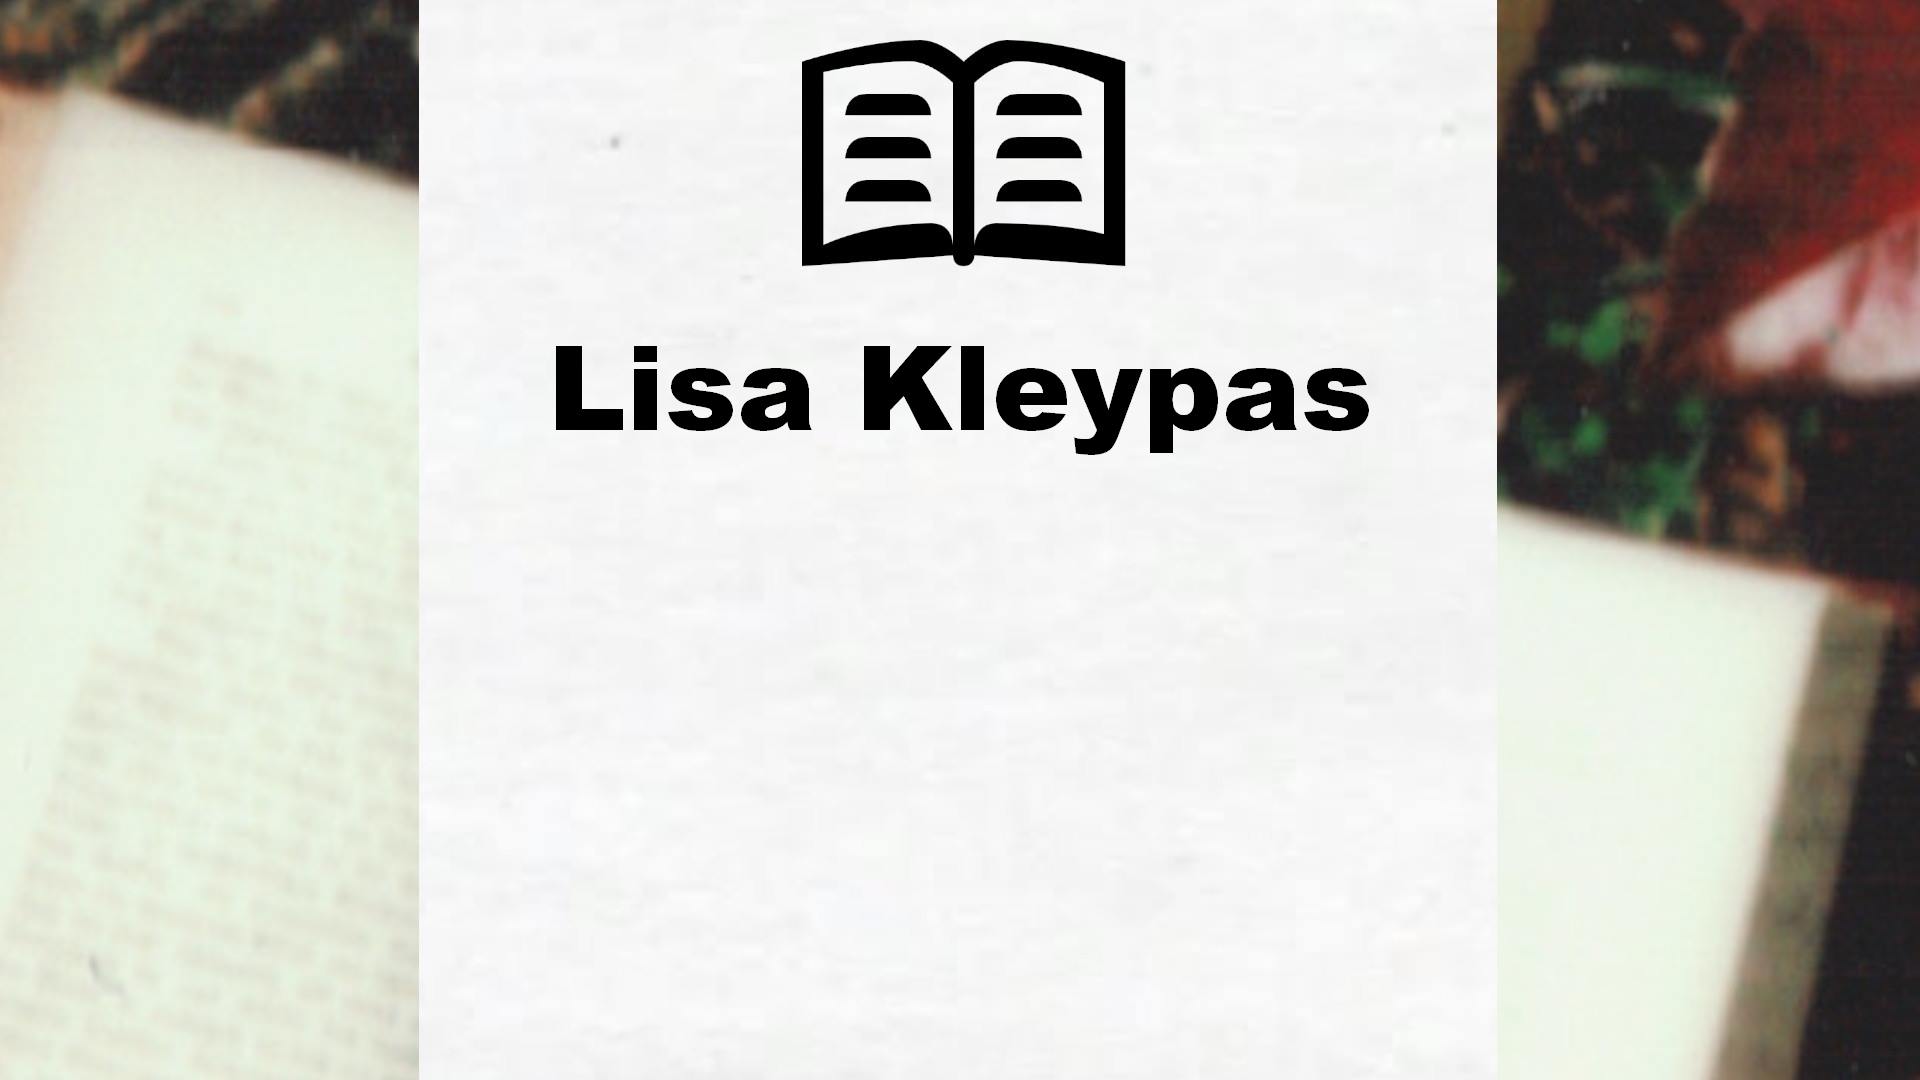 Livres de Lisa Kleypas